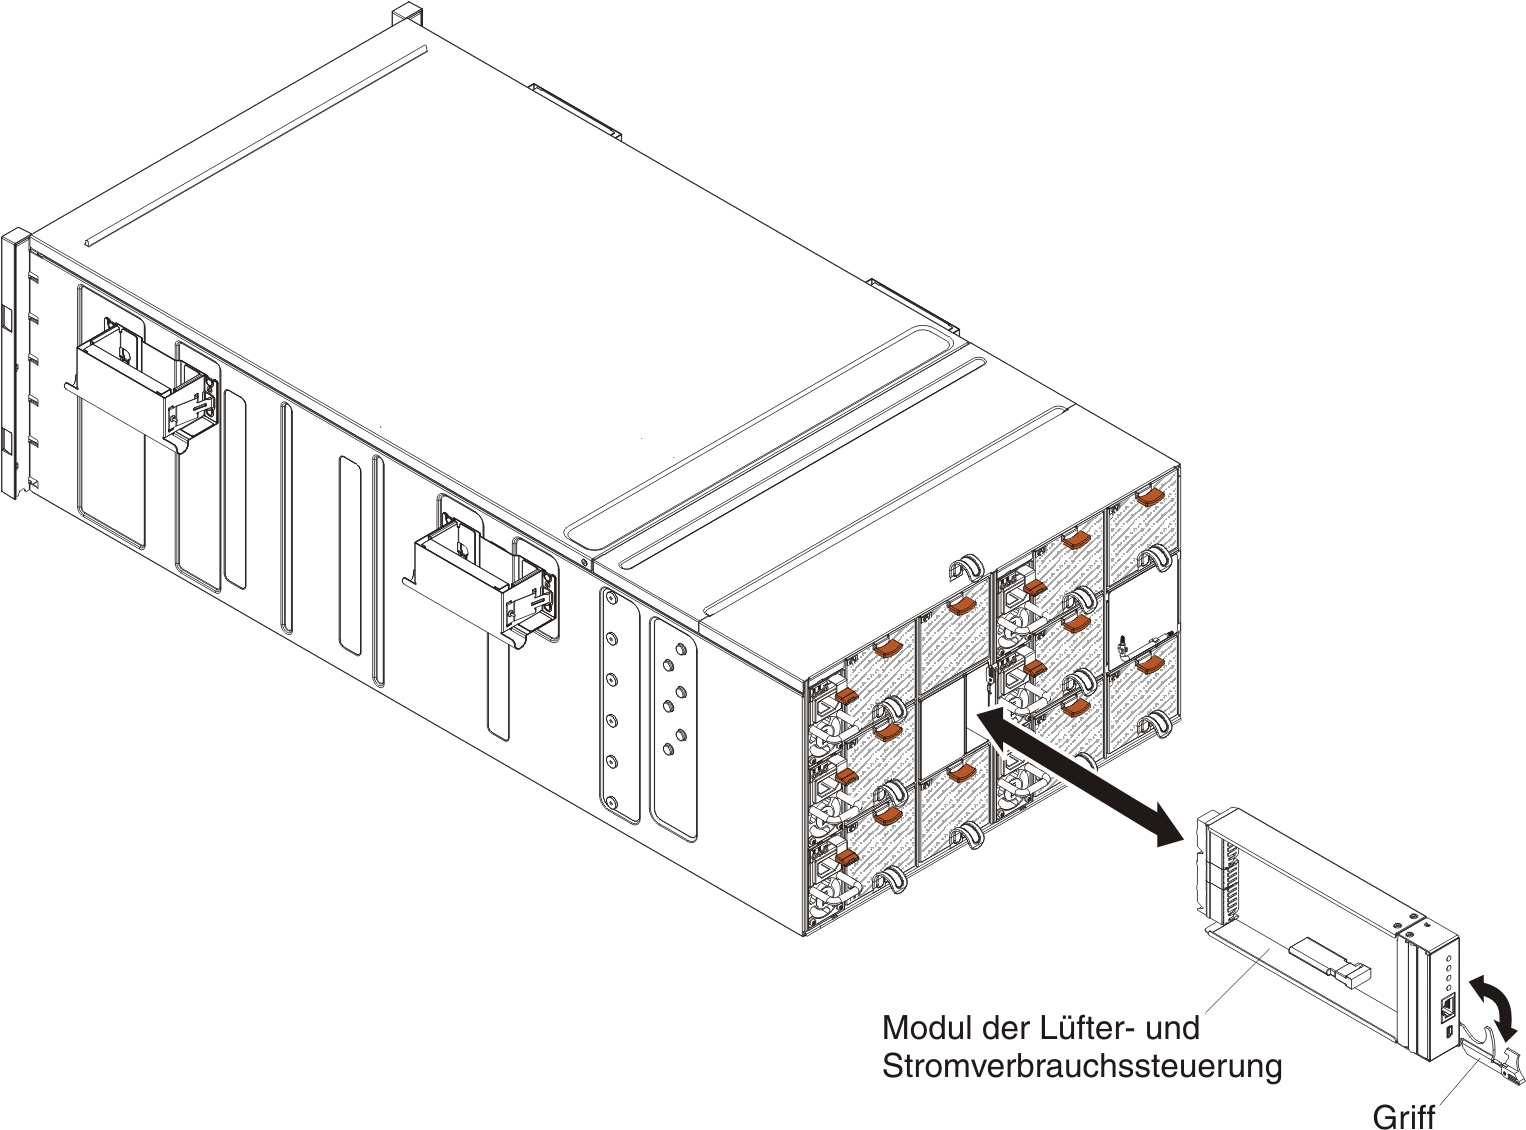 Abbildung mit einer Darstellung der Installation eines Lüfter- und Stromversorgungscontrollers im Gehäuse